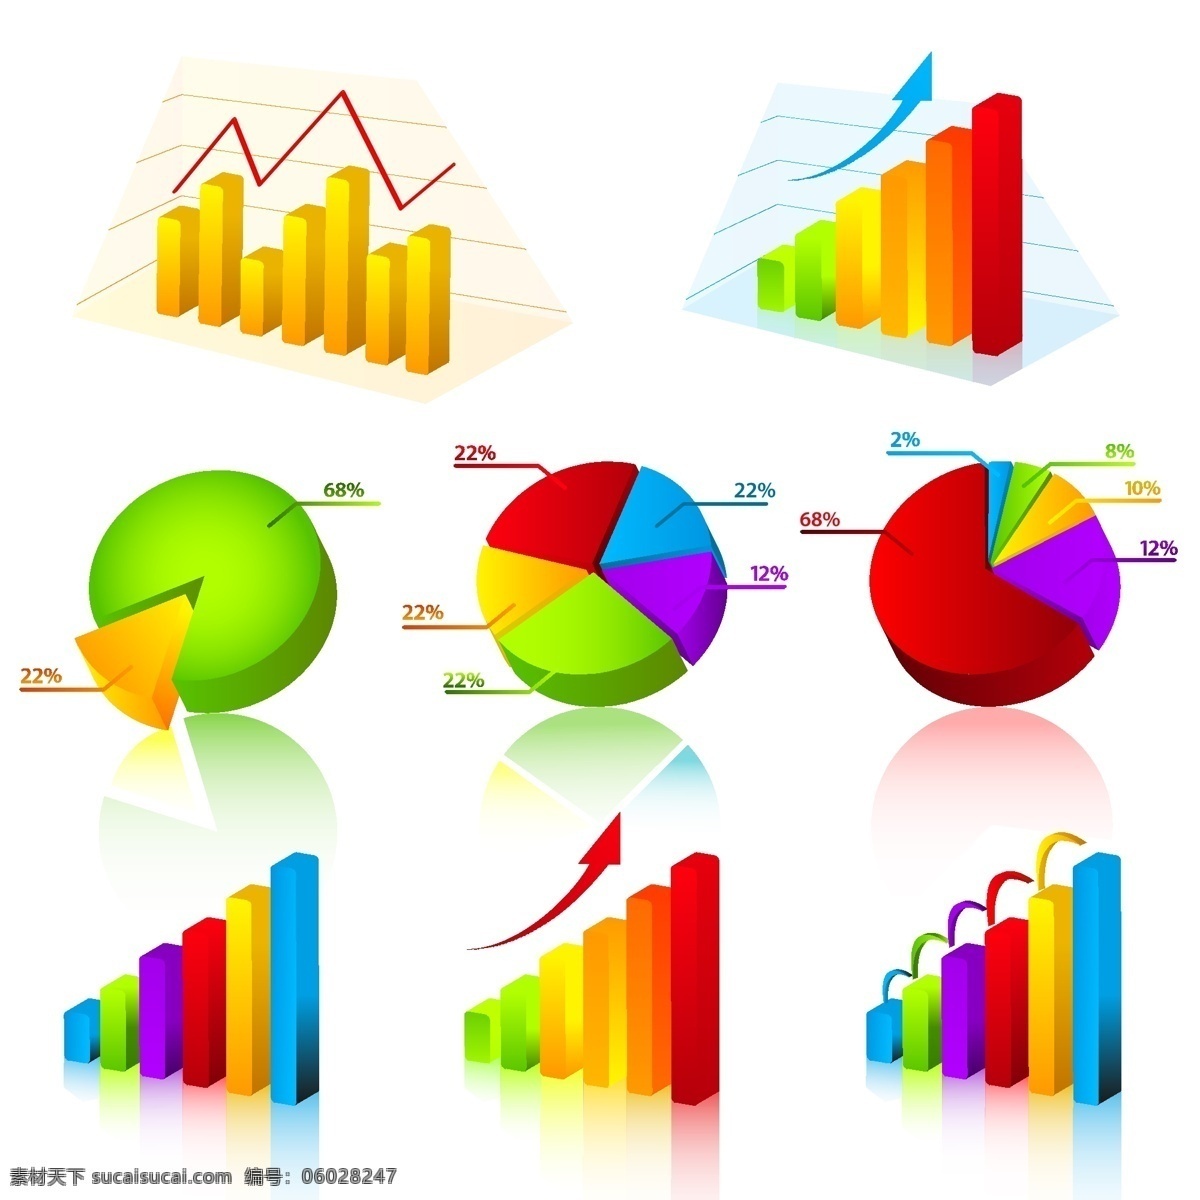 数据统计 主题 矢量 饼图 分析 立体 曲线图 趋势 商业 数据 统计 图表 圆饼 走势 矢量图 其他矢量图